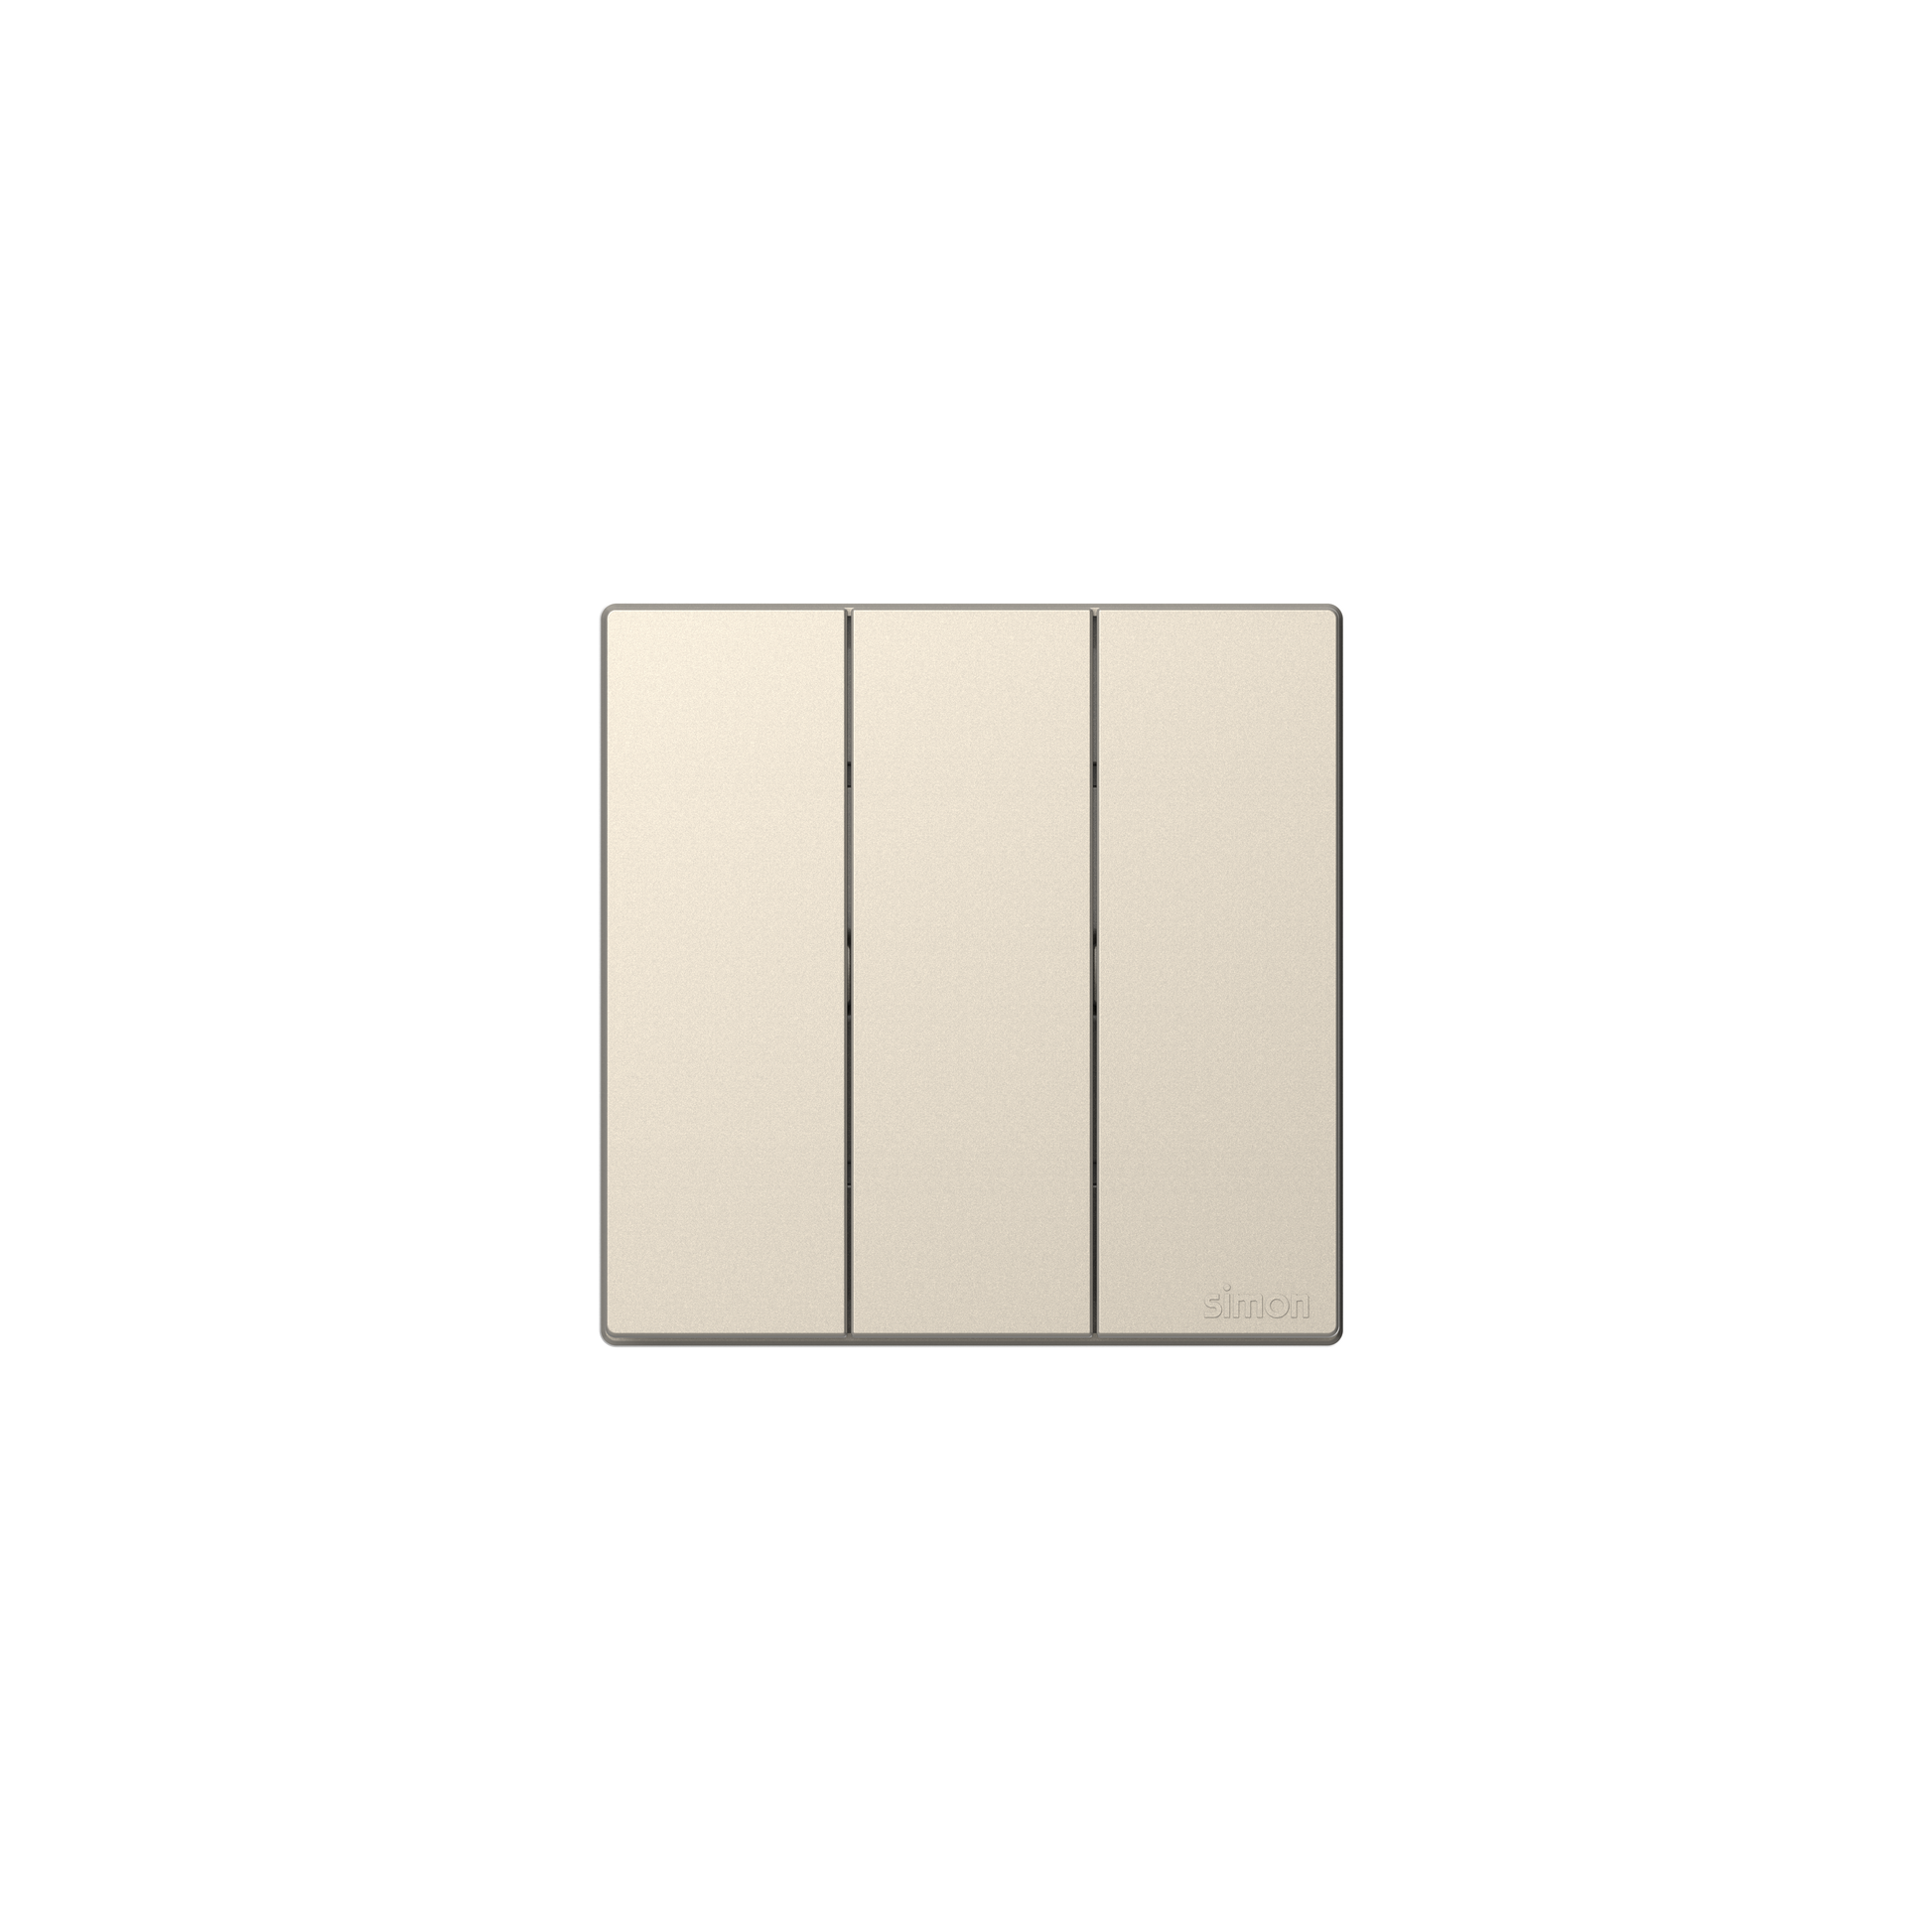 Bộ Công tắc ba, 2 chiều mặt vuông màu sâm panh (champgane) cao cấp Simon S6 581032-46